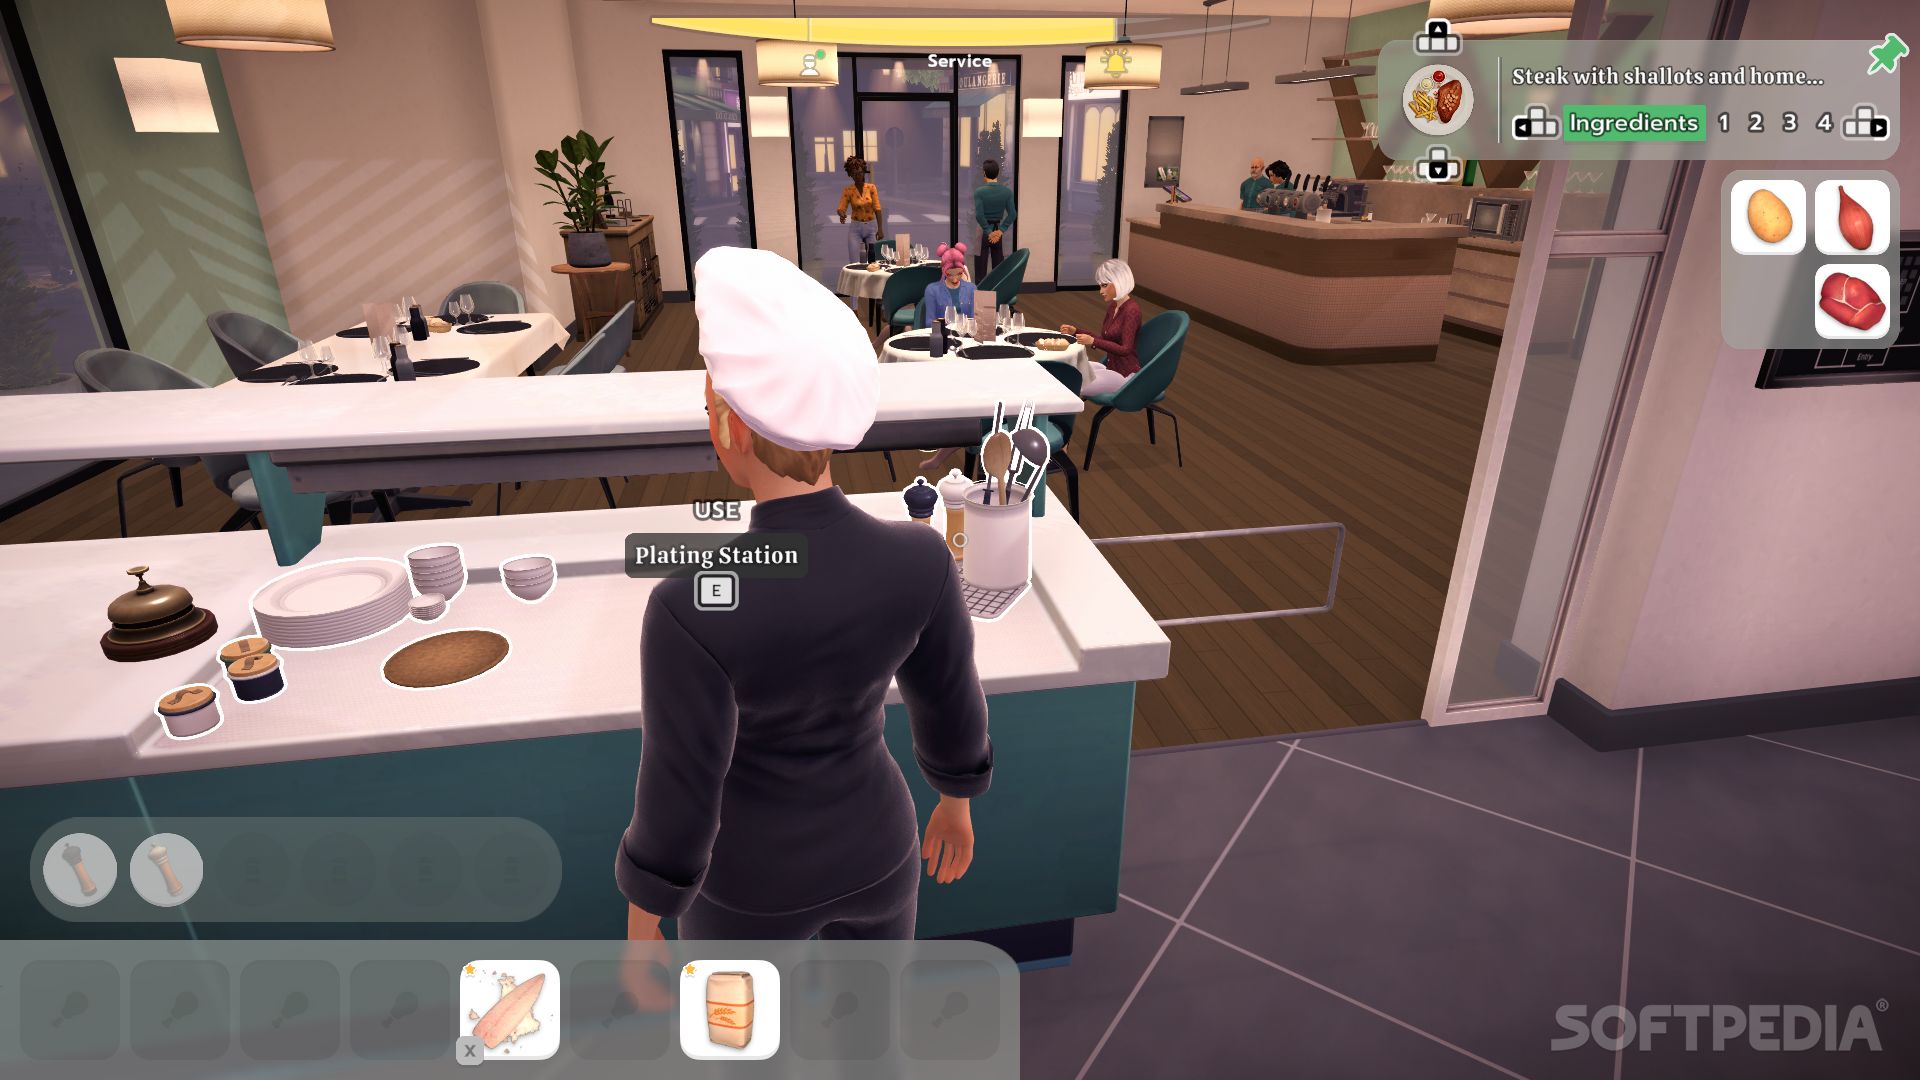 Chef Life: A Restaurant Simulator Review